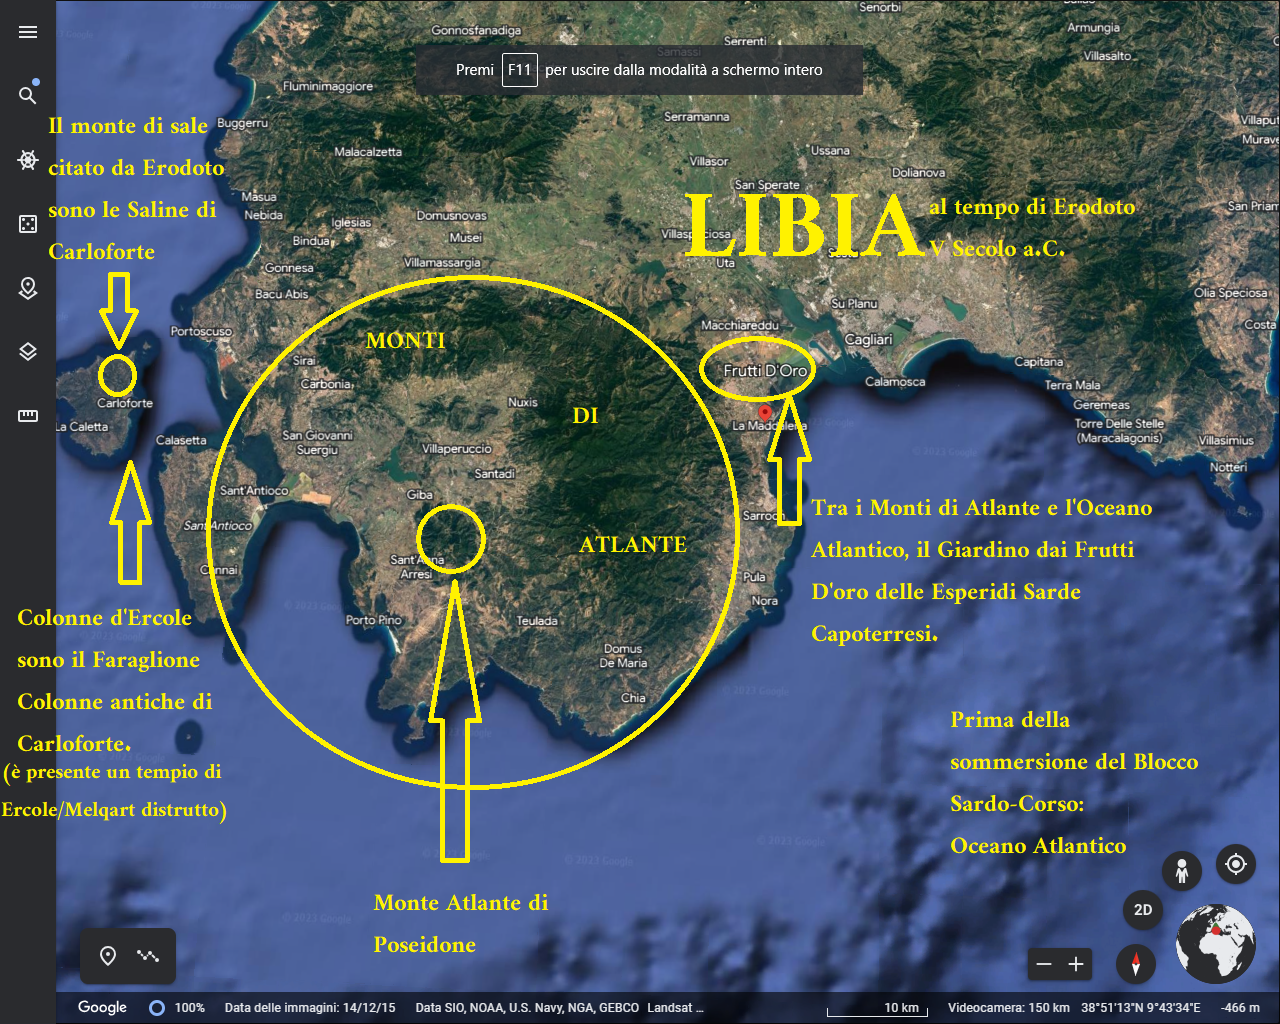 これまでヘロドテアンのリビアの地図作成は間違っていた：リビアはカリアリ州である